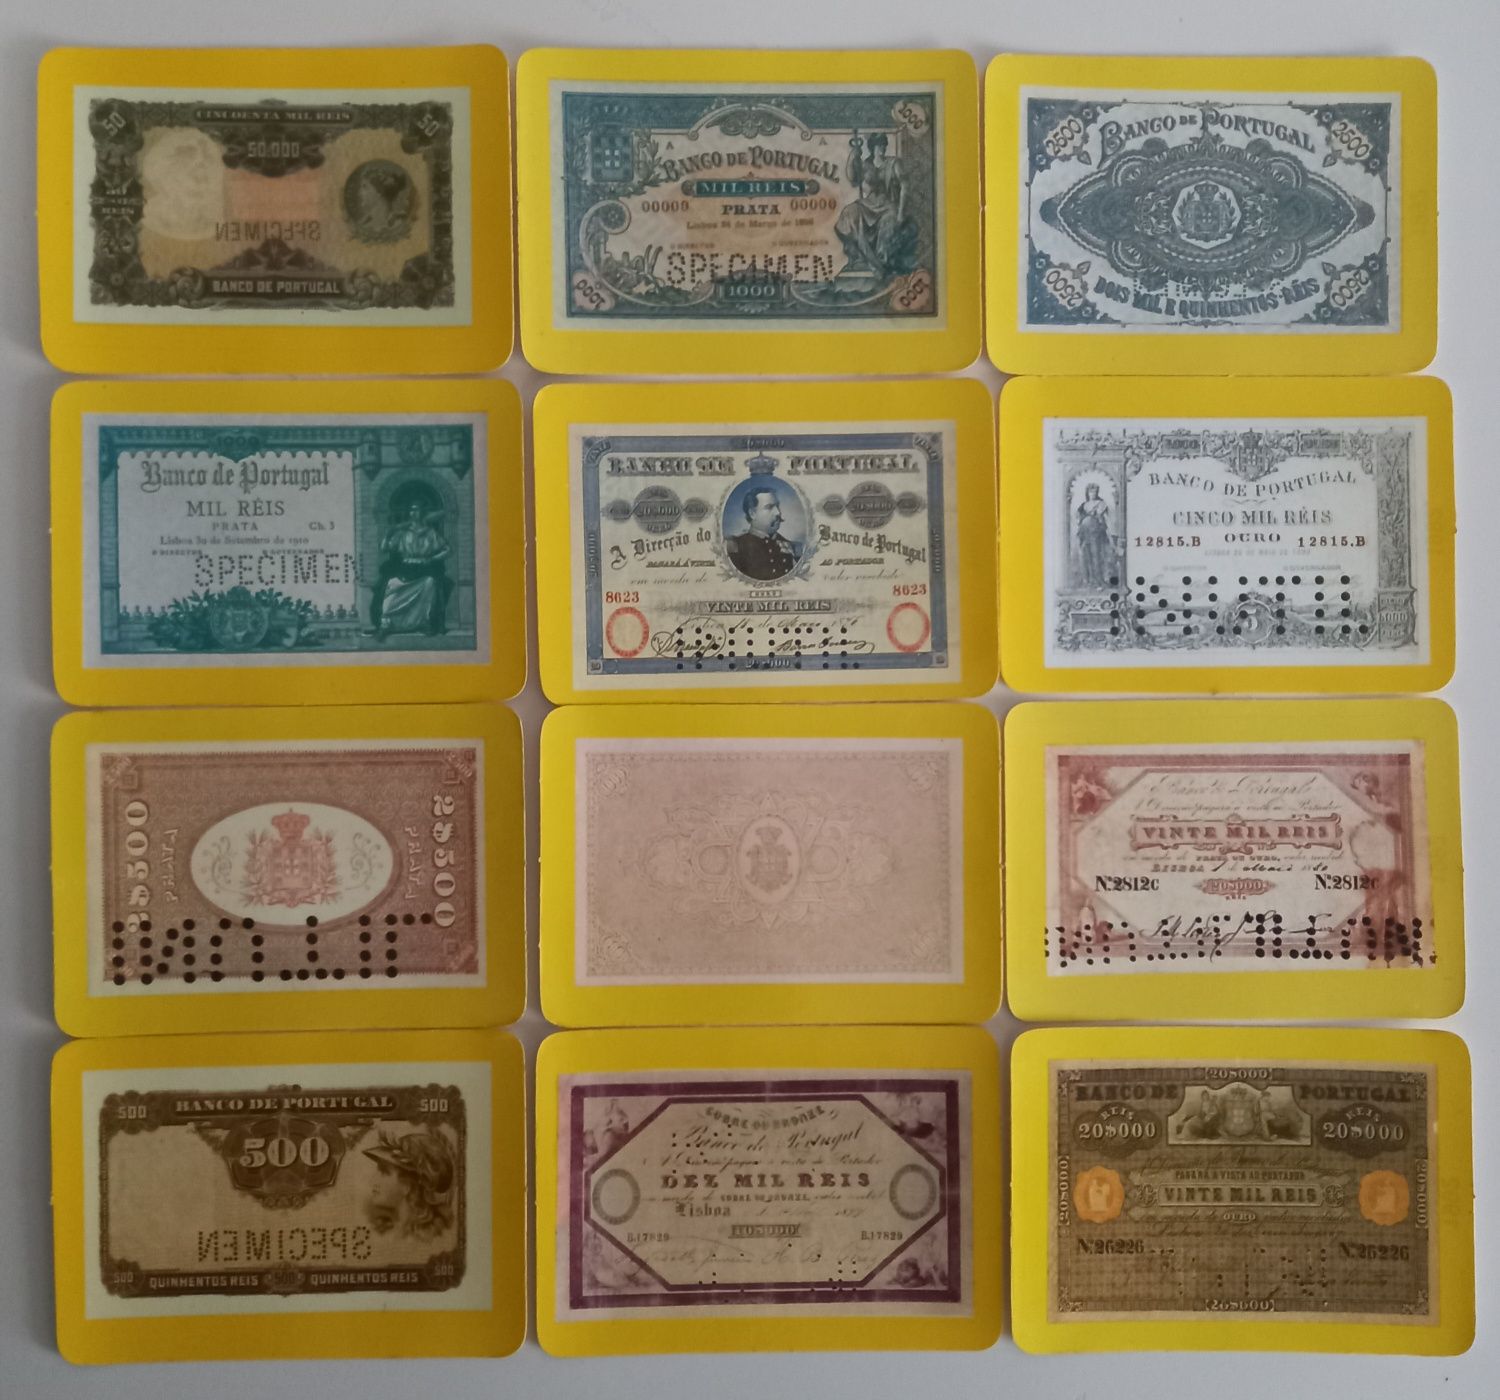 Coleção de 12 Calendários de bolso tema "Dinheiro/notas de Portu